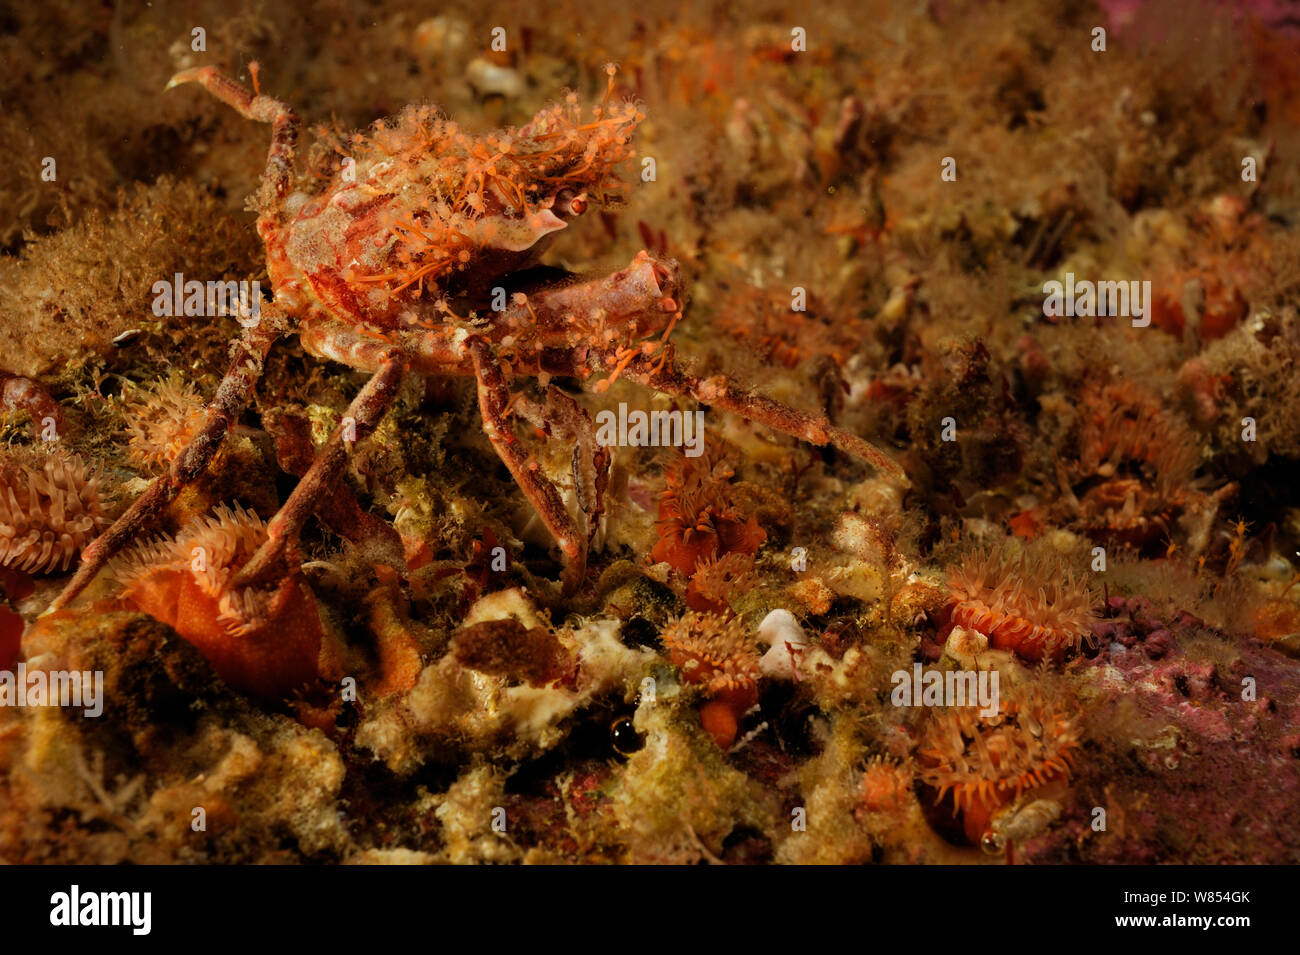 Contratti grancevola (Hyas coarctatus) con hydroids, Oceano Atlantico, Foto Stock